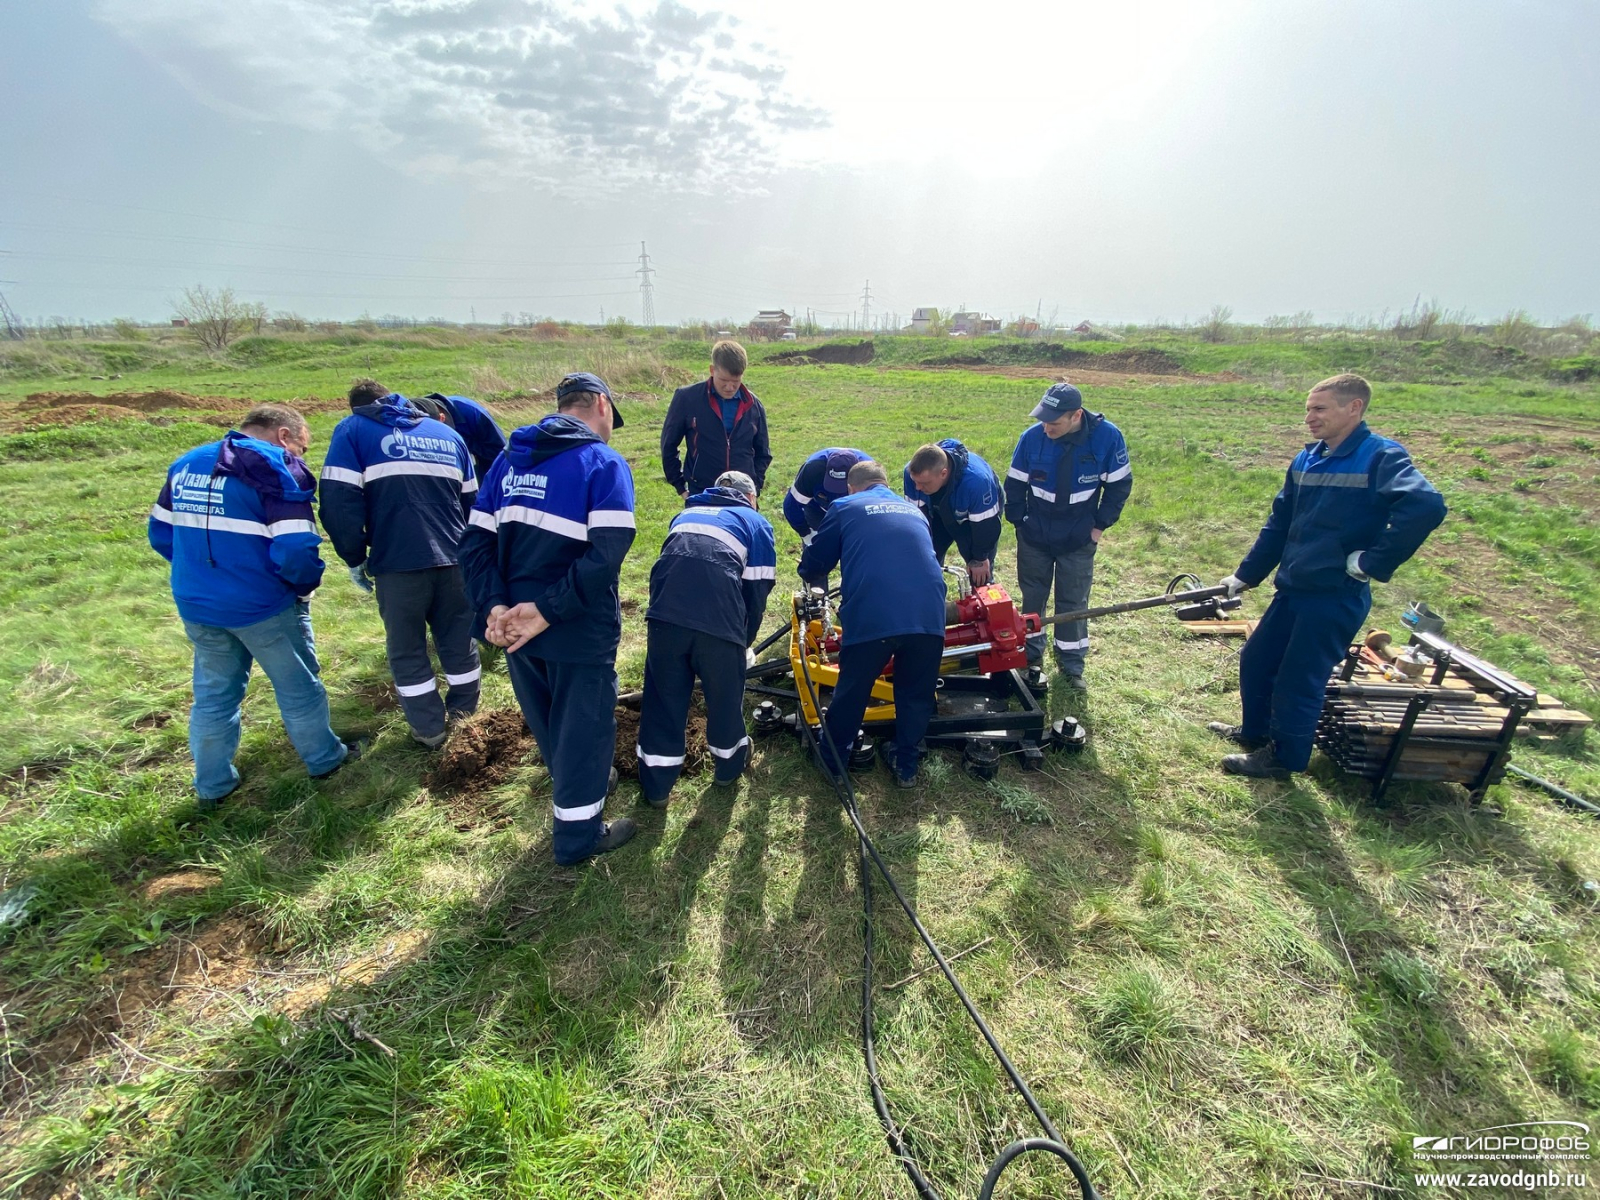 Бригада от АО «Газпром газораспределение Вологда» успешно прошла обучение на УПКТ-30В с поверхности